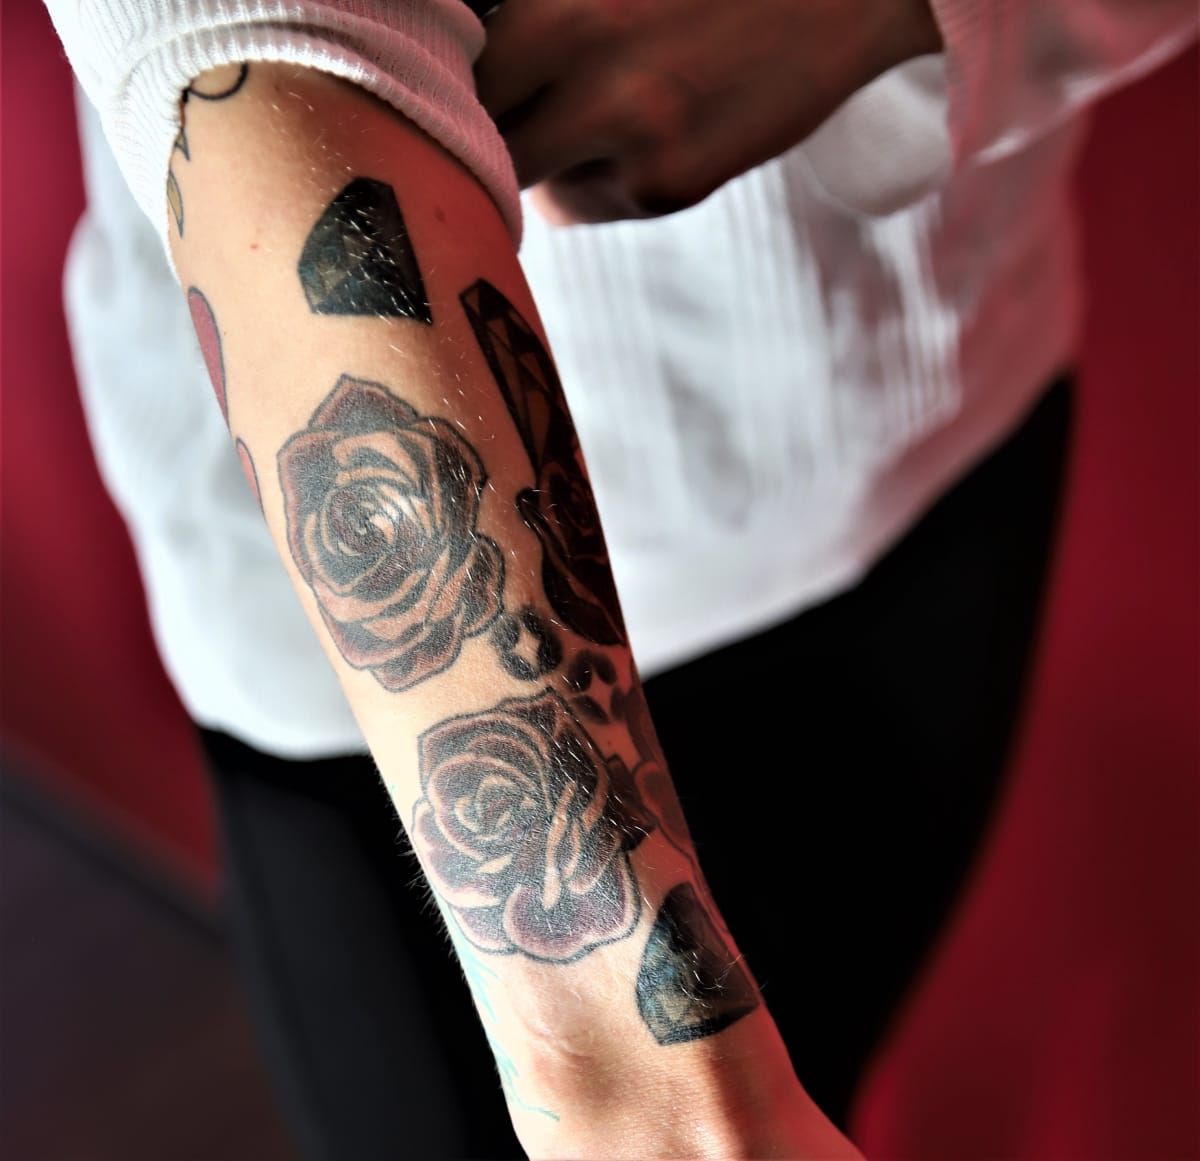 Hanna Ranta tatuoi käteensä ruusuja arpia peittääkseen.